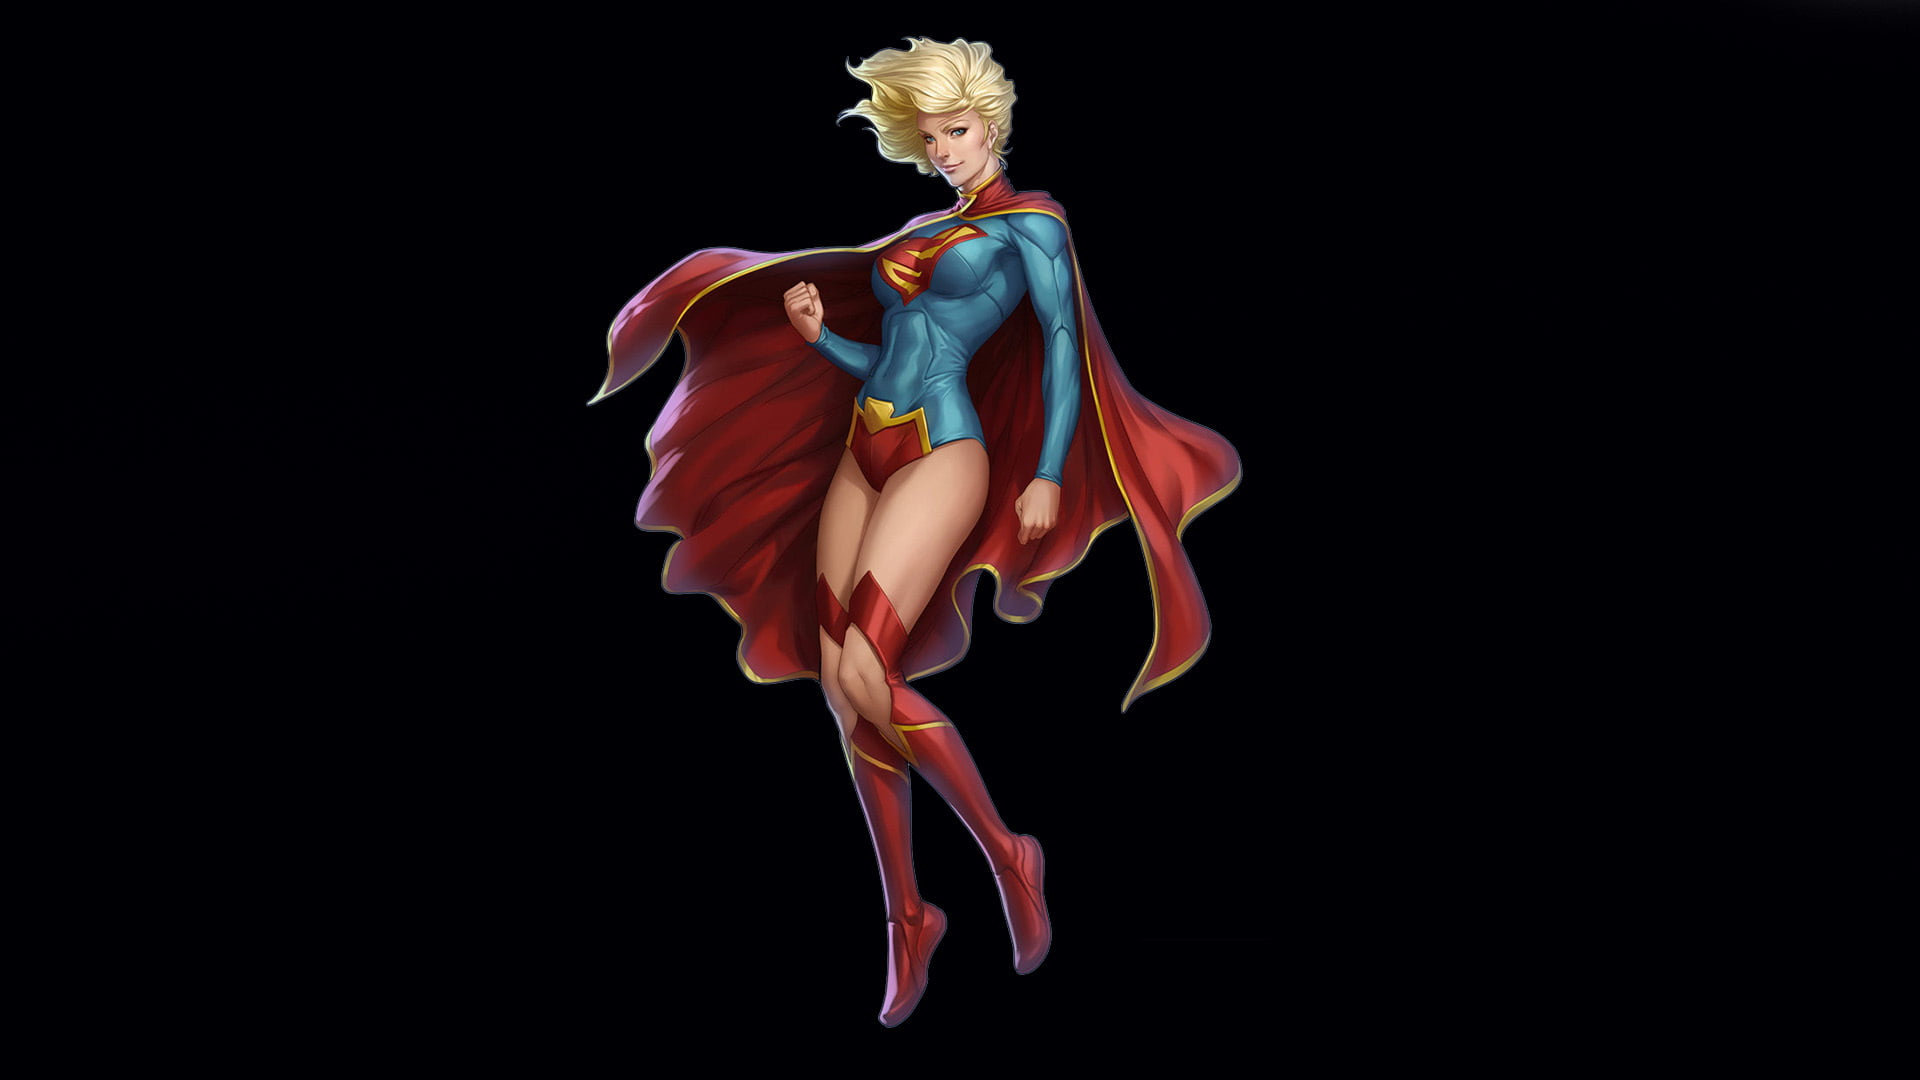 Supergirl illustration, look, costume, cloak, DC Comics, Kara Zor-El